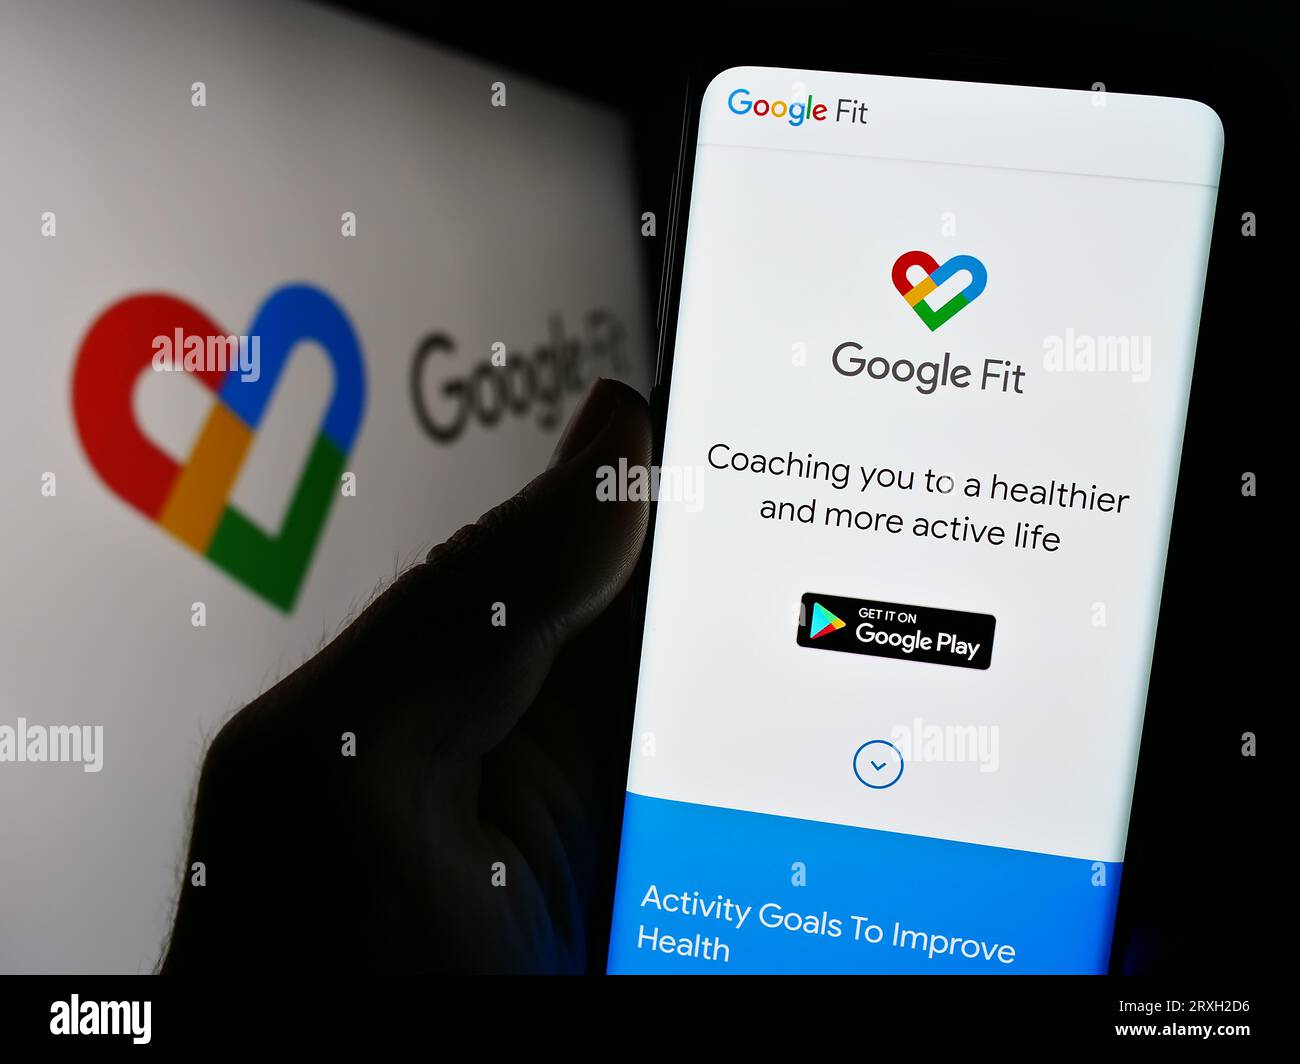 Persona in possesso di cellulare con pagina Web del software di monitoraggio della salute Google Fit sullo schermo davanti al logo. Concentrarsi sul centro del display del telefono. Foto Stock